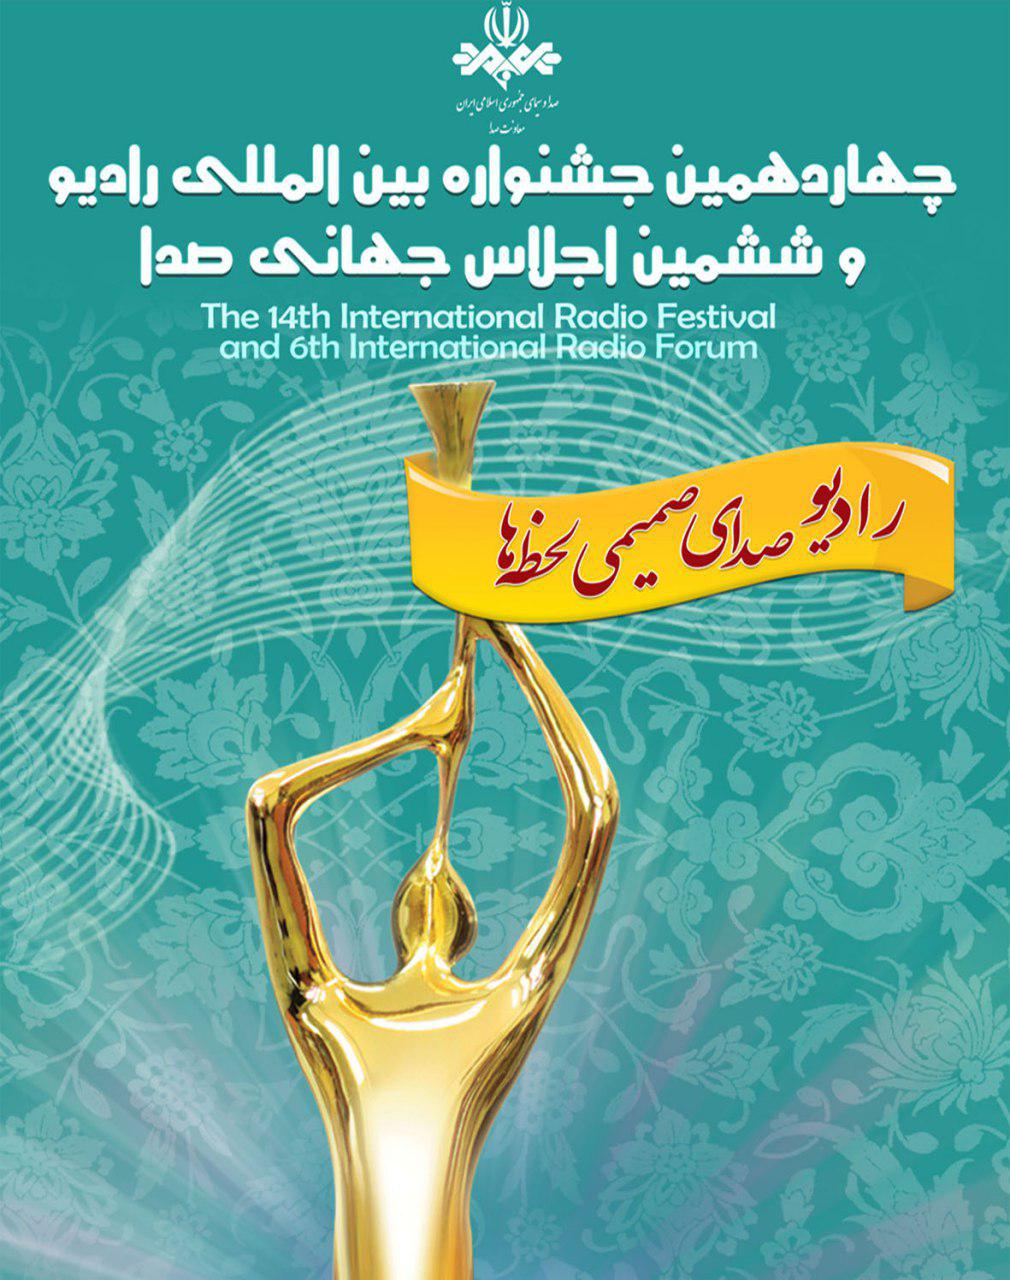 شعار چهاردهمین جشنواره بین المللی رادیو انتخاب شد